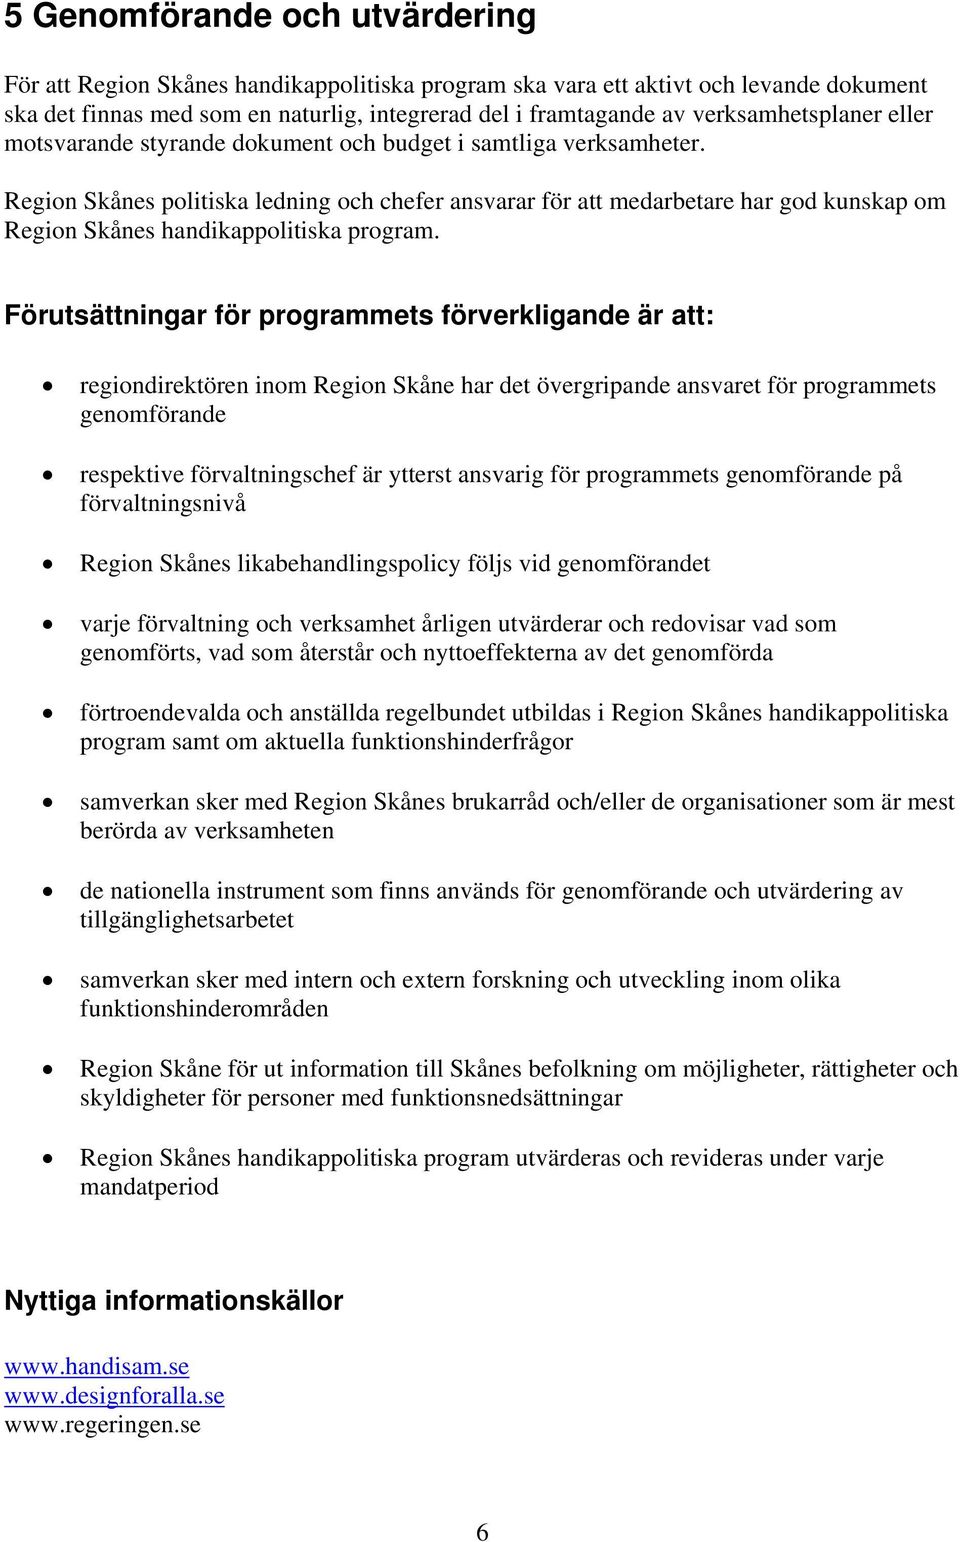 Region Skånes politiska ledning och chefer ansvarar för att medarbetare har god kunskap om Region Skånes handikappolitiska program.